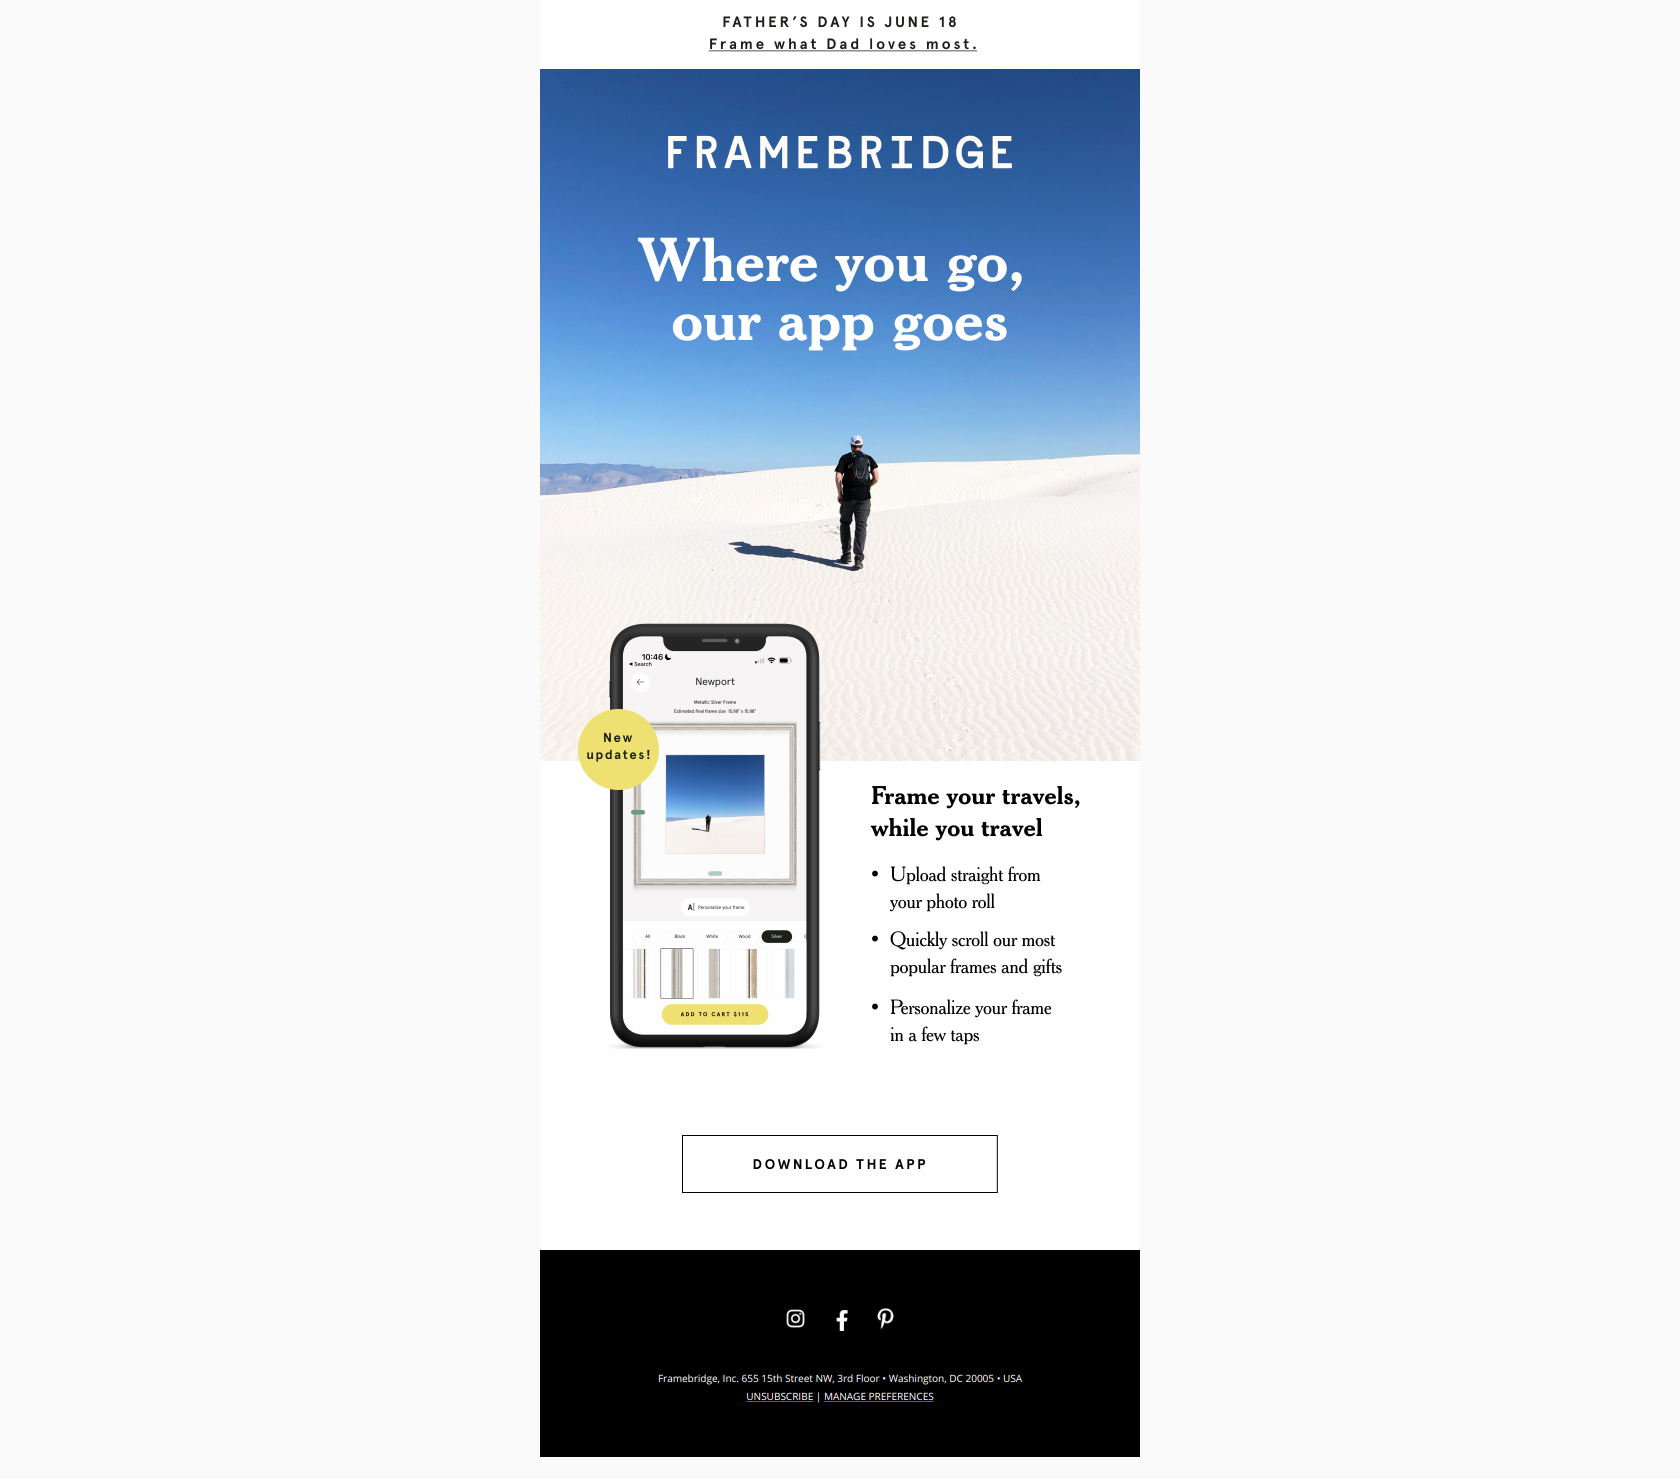 Going somewhere? - Framebridge Newsletter